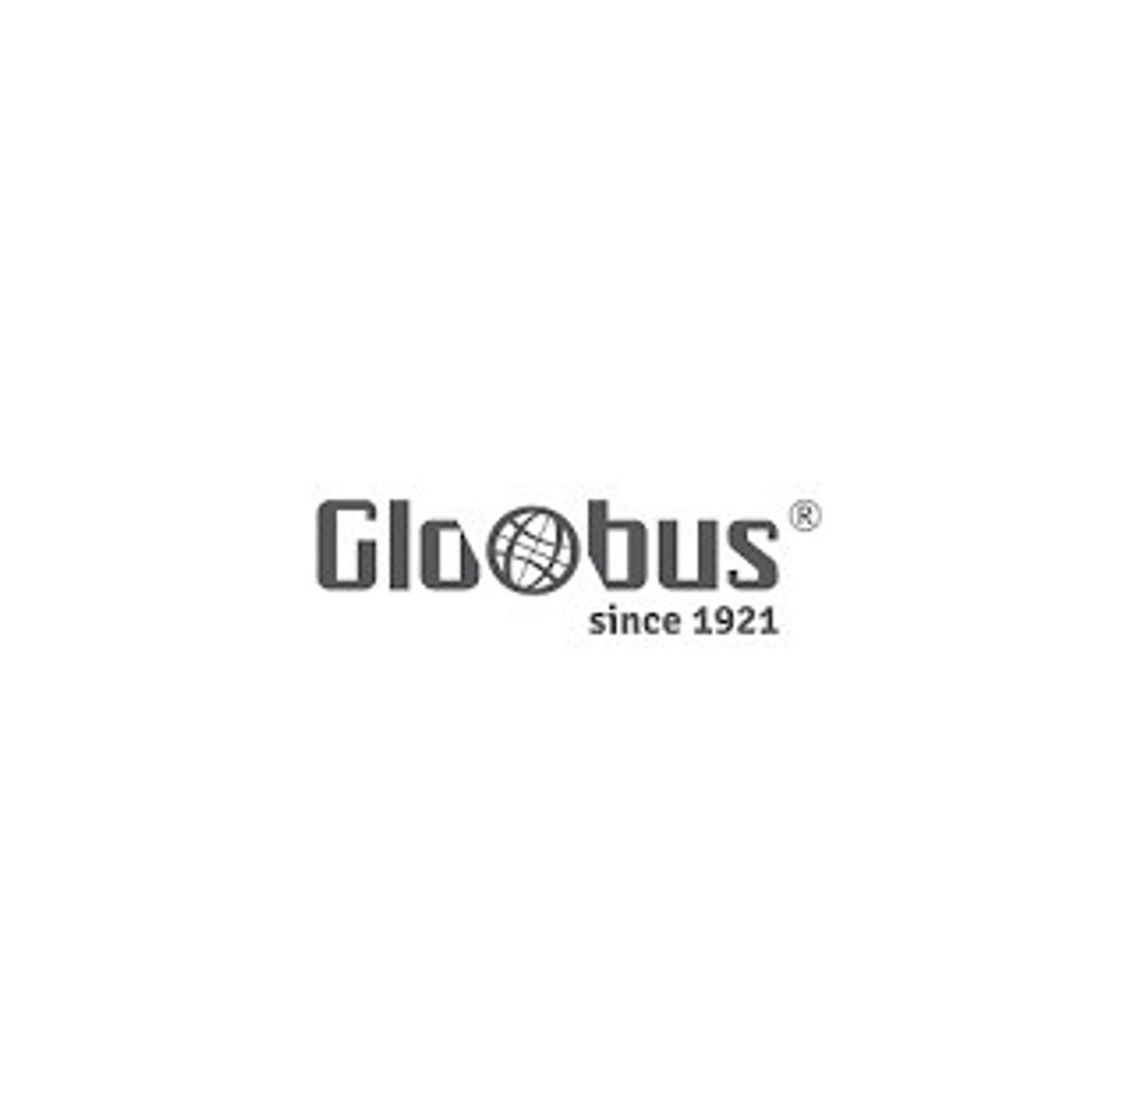 Globus - oświetlenie przemysłowe LED